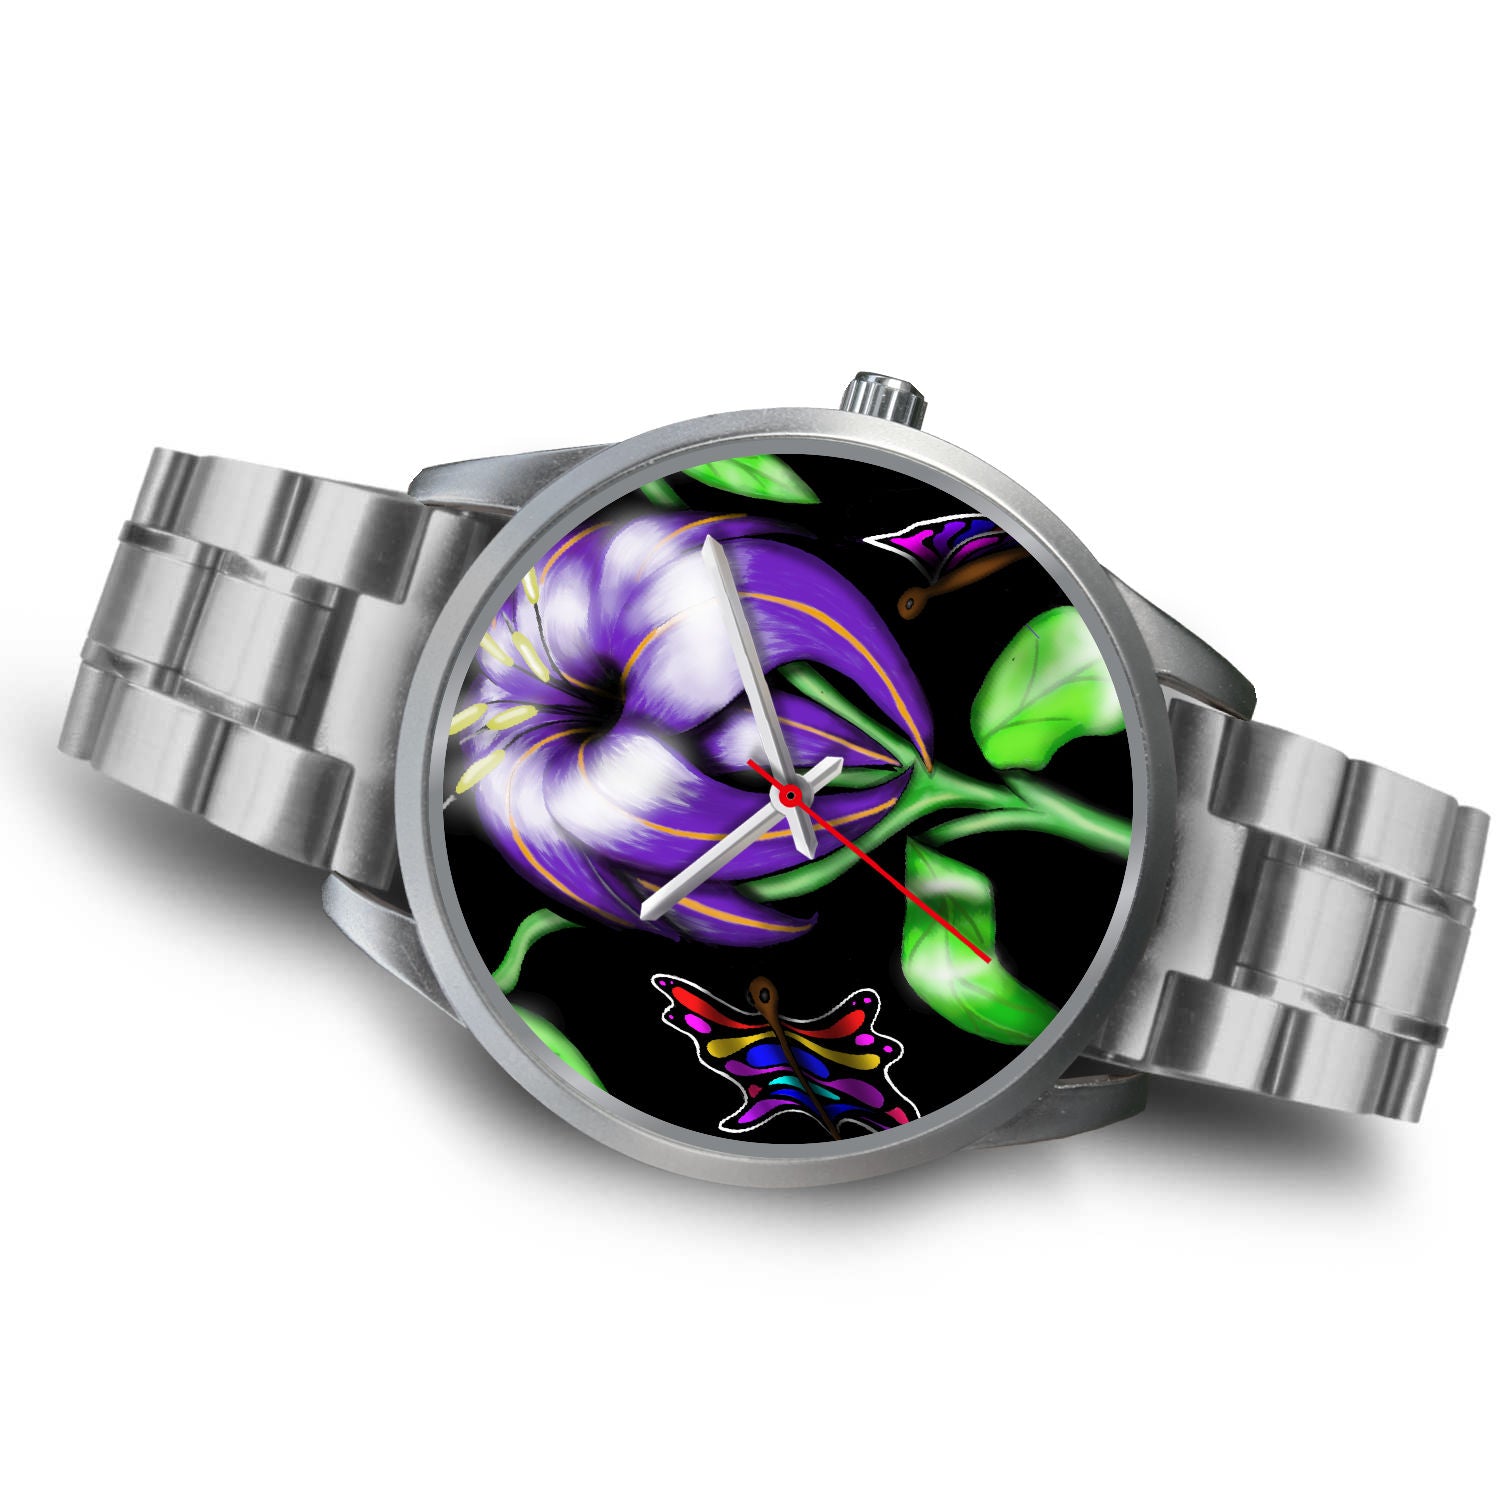 Butterfly Flower Custom Watch